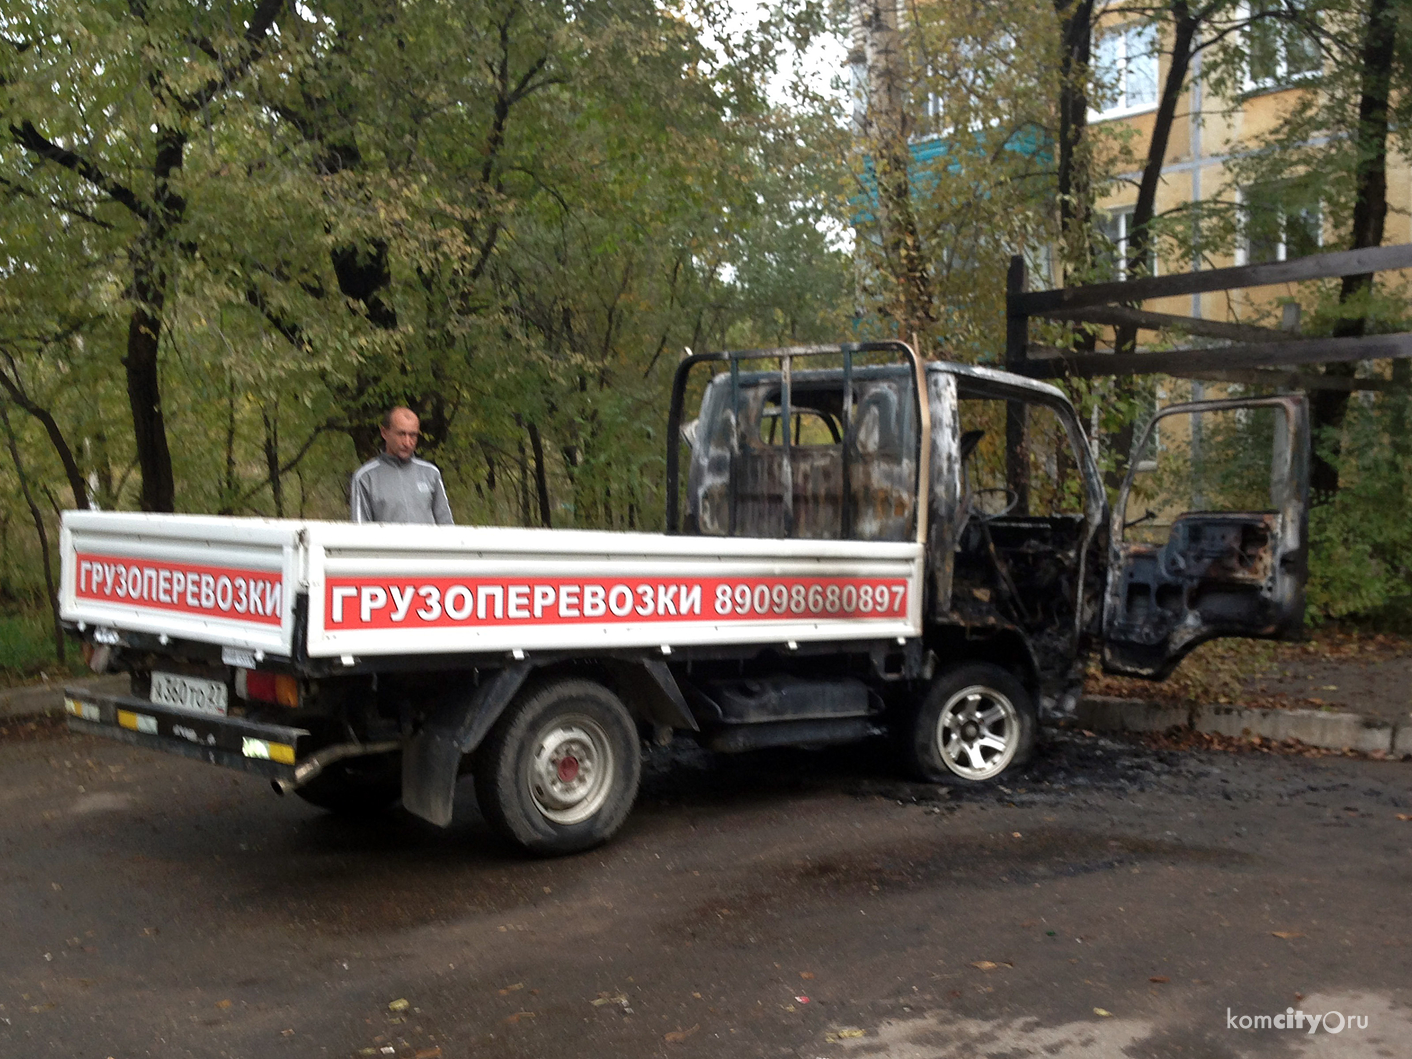 Во дворах по проспекту Ленина ночью сгорел автомобиль